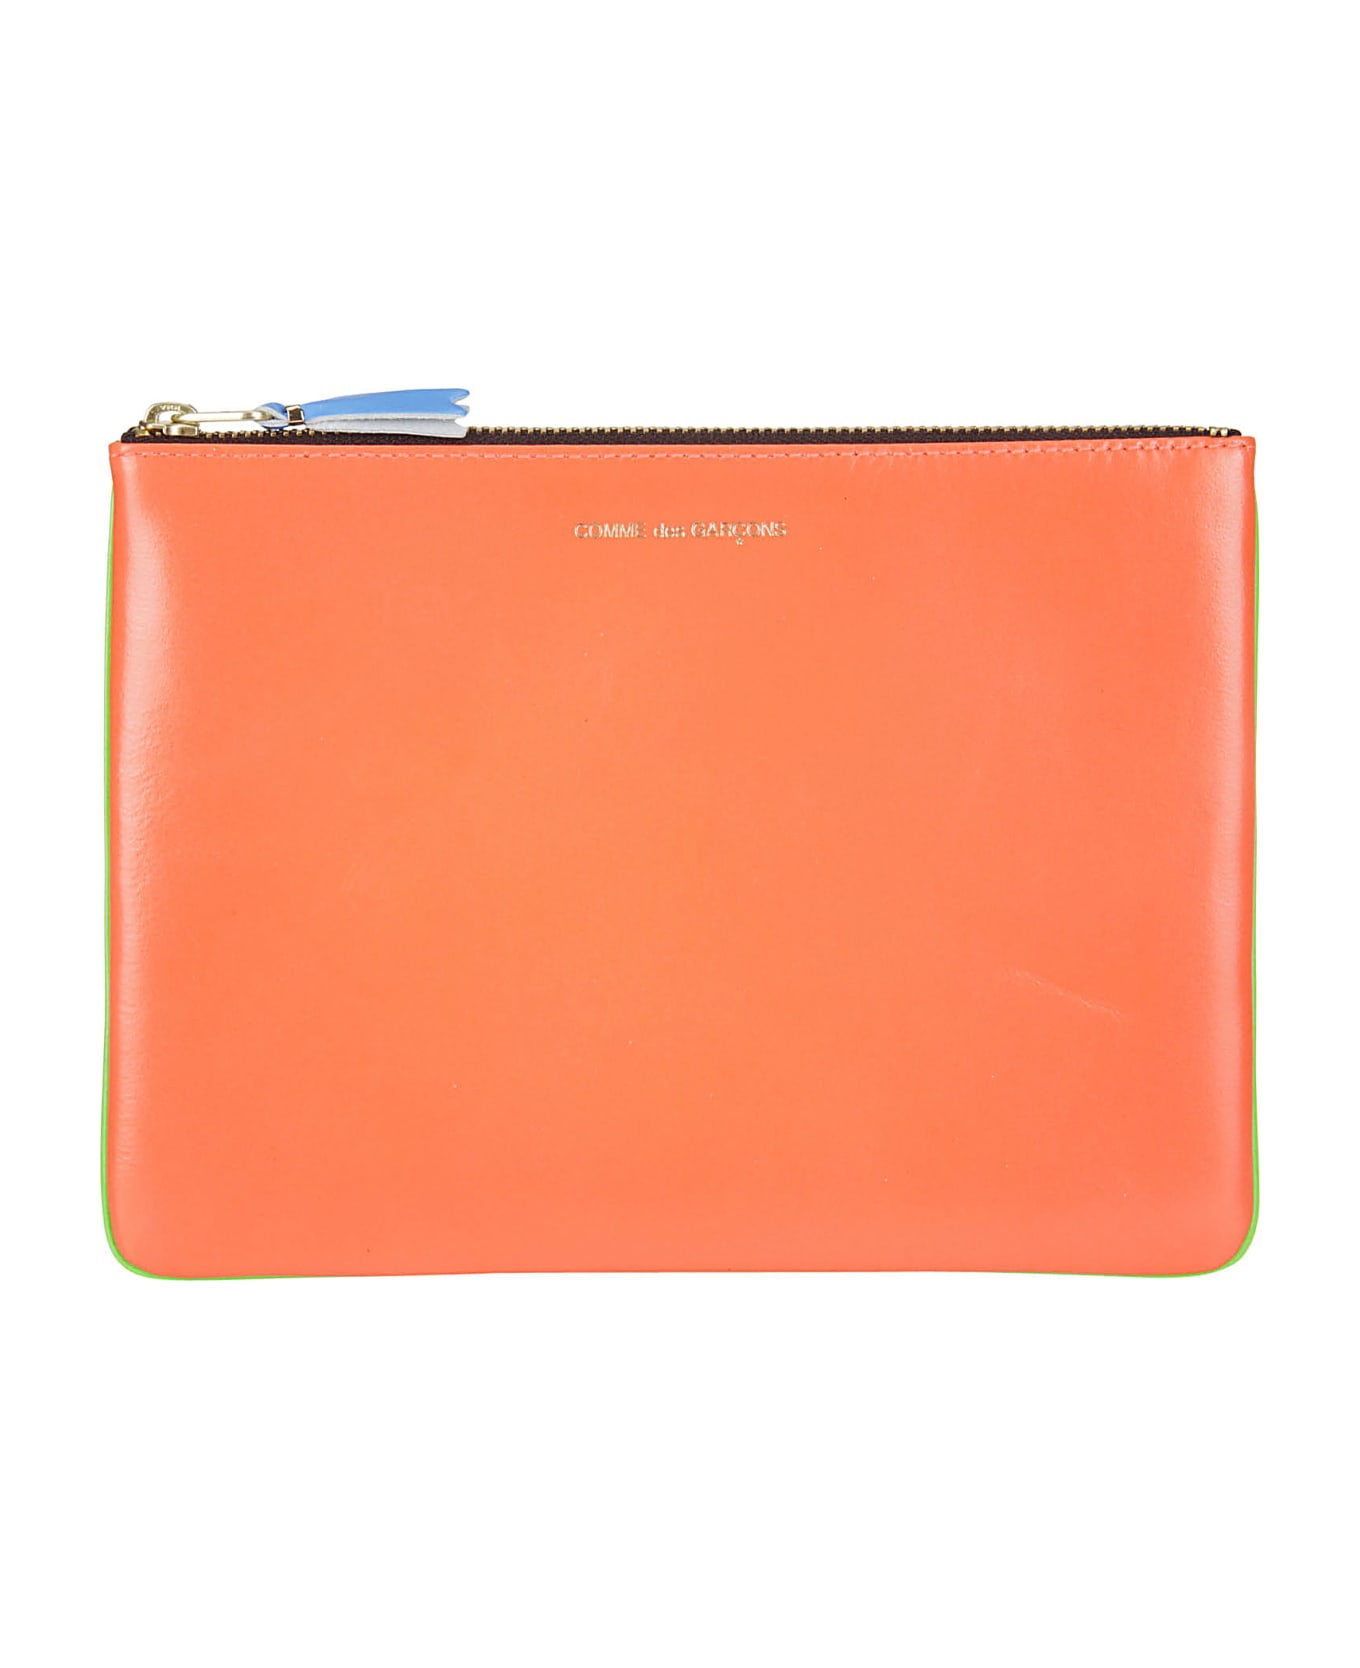 Comme des Garçons Wallet Super Fluo Leather Line - ORANGE 財布